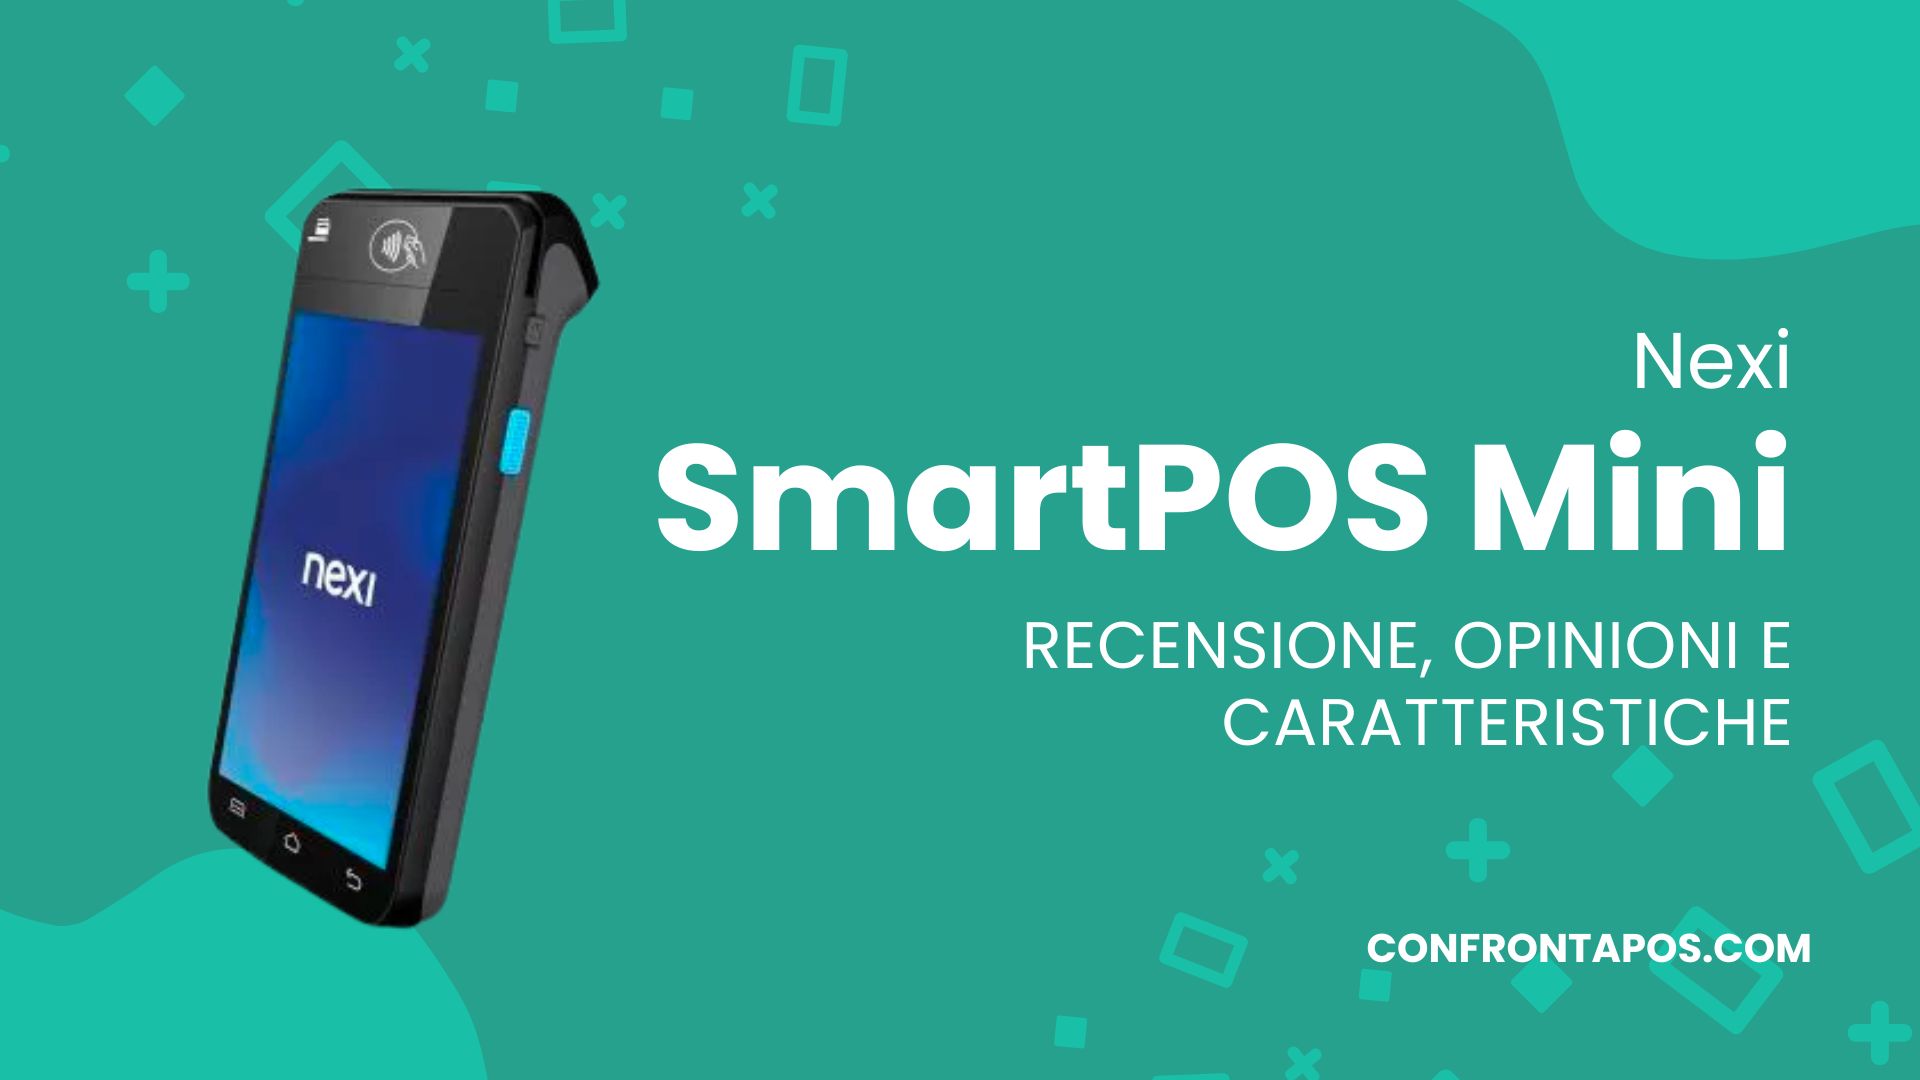 SmartPOS Mini con stampante: stampa ricevute ovunque